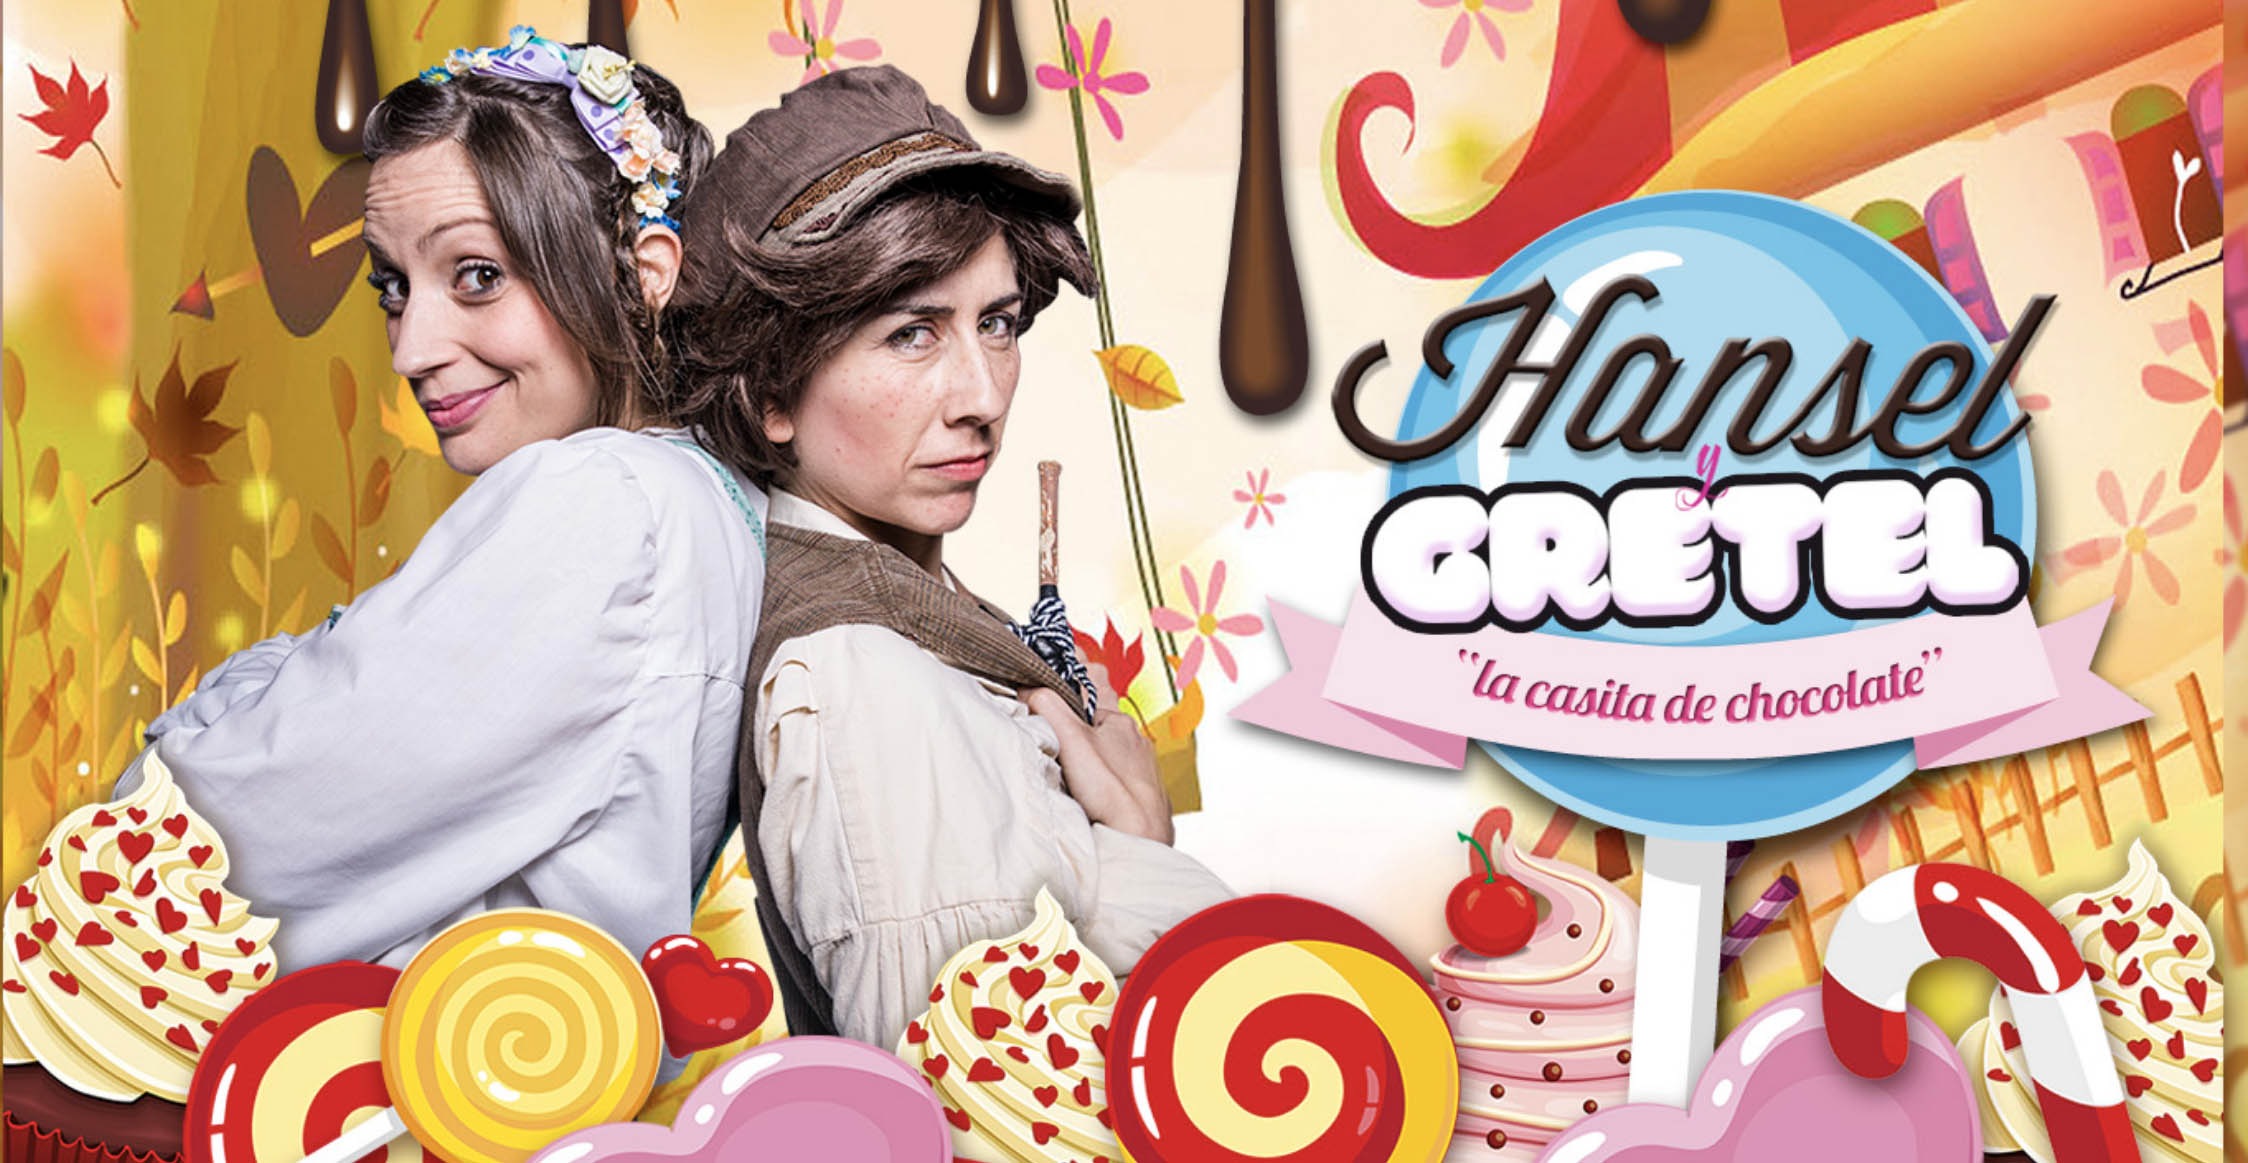 El Teatro Flumen te invita a compartir con “Hansel y Gretel” tu confinamiento